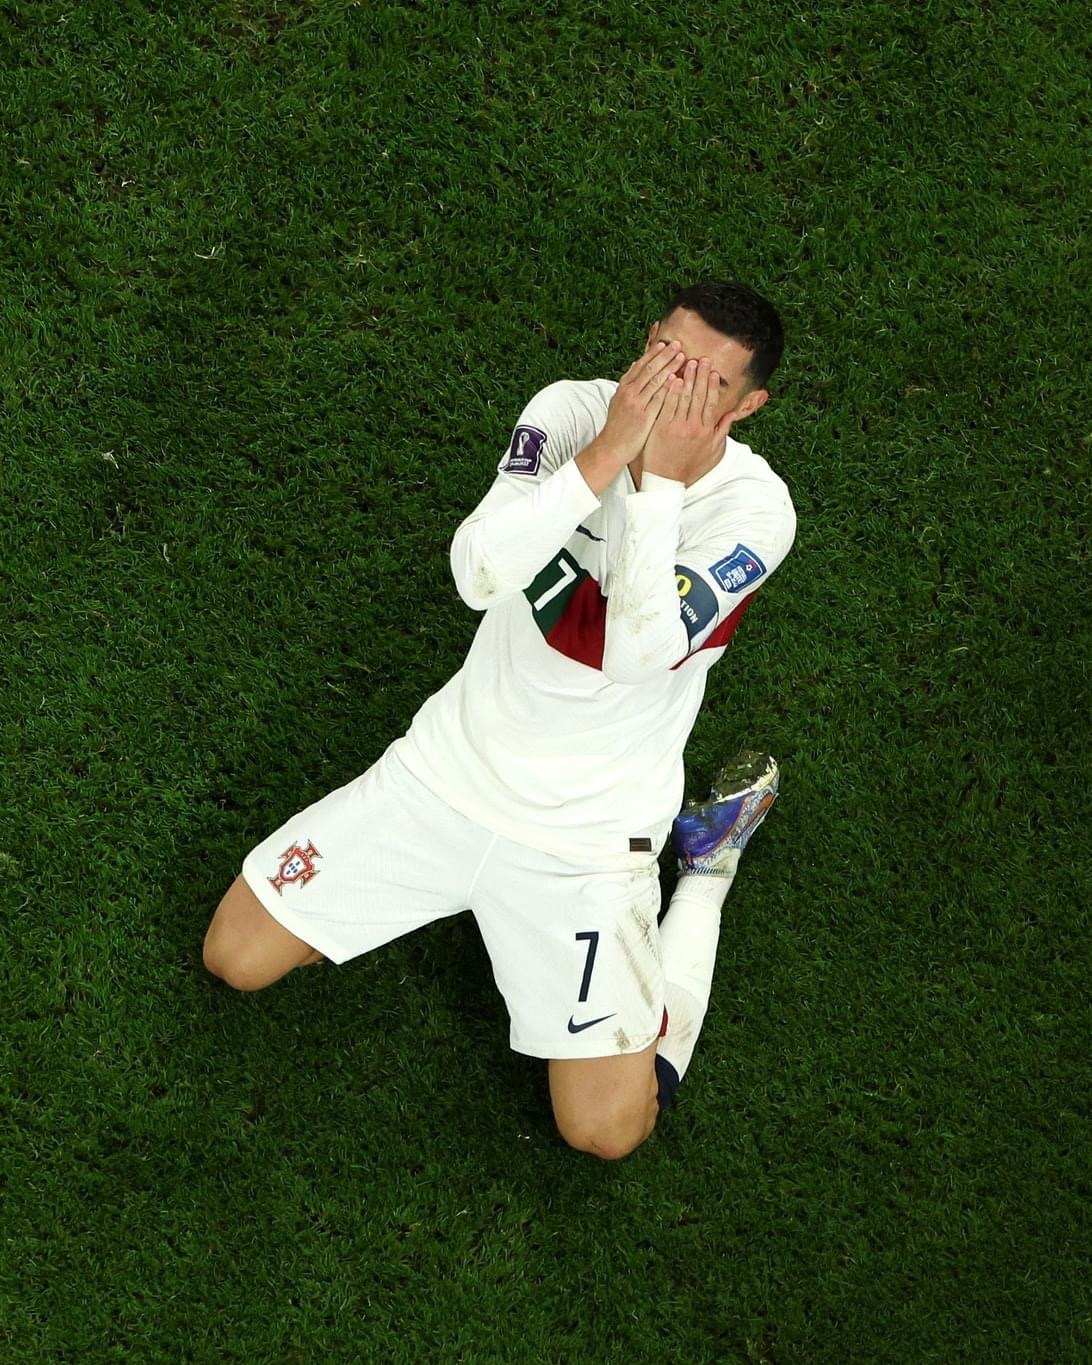 Điều gì đã khiến Ronaldo phải từ biệt World Cup 2024 với nước mắt? Những hình ảnh xúc động trong trận đấu này đã để lại dấu ấn khó phai trong lòng người hâm mộ. Hãy cùng xem ảnh Ronaldo khóc để hiểu thêm về tình yêu và niềm đam mê của anh cho bóng đá và đội tuyển quốc gia.